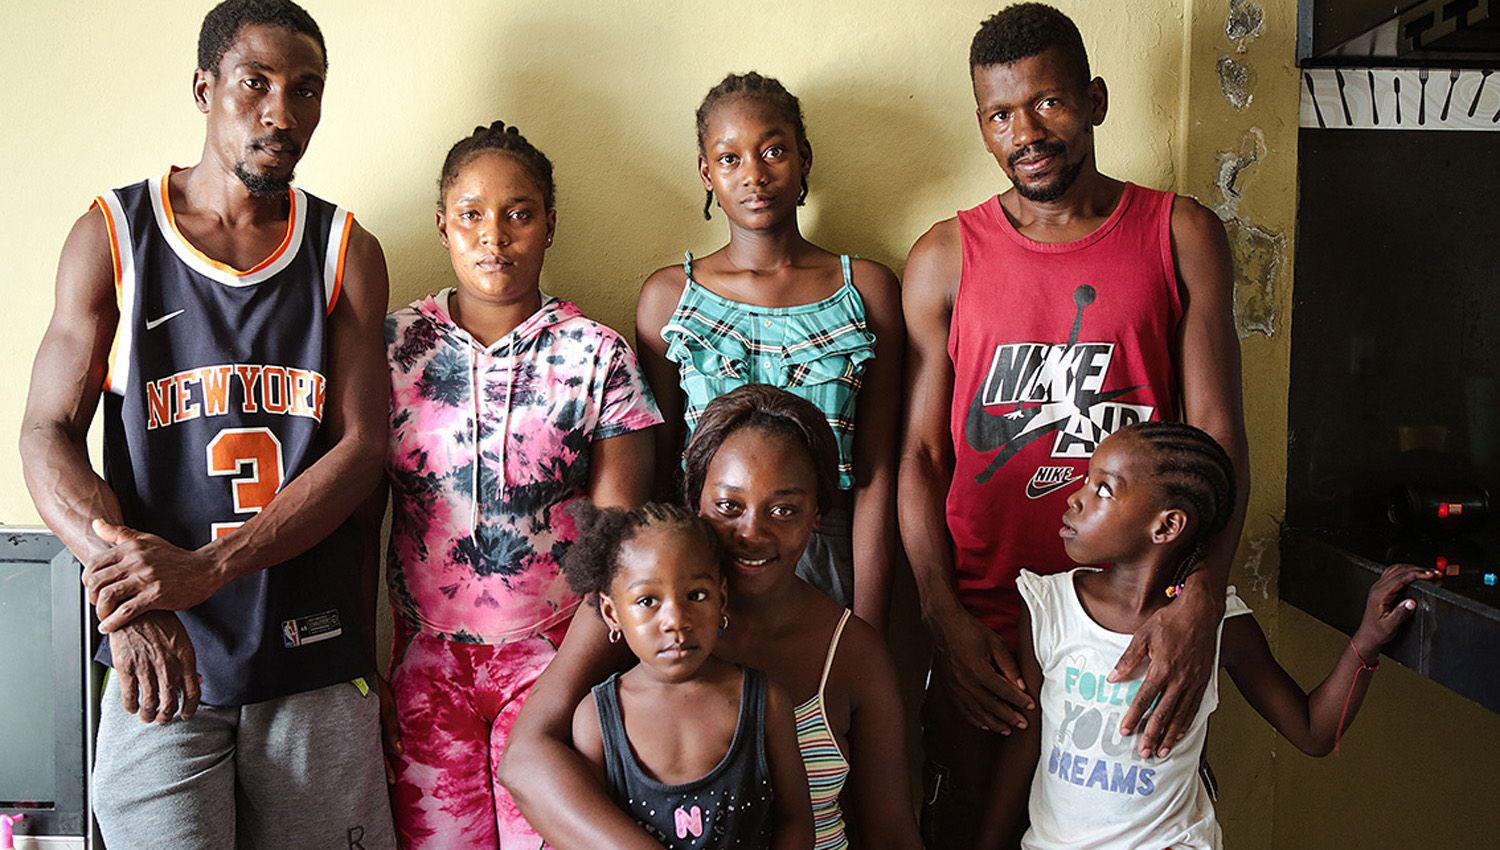 ldquoEsperanza en la fronterardquo el drama de la migracioacuten haitiana contada en primera persona por tres protagonistas